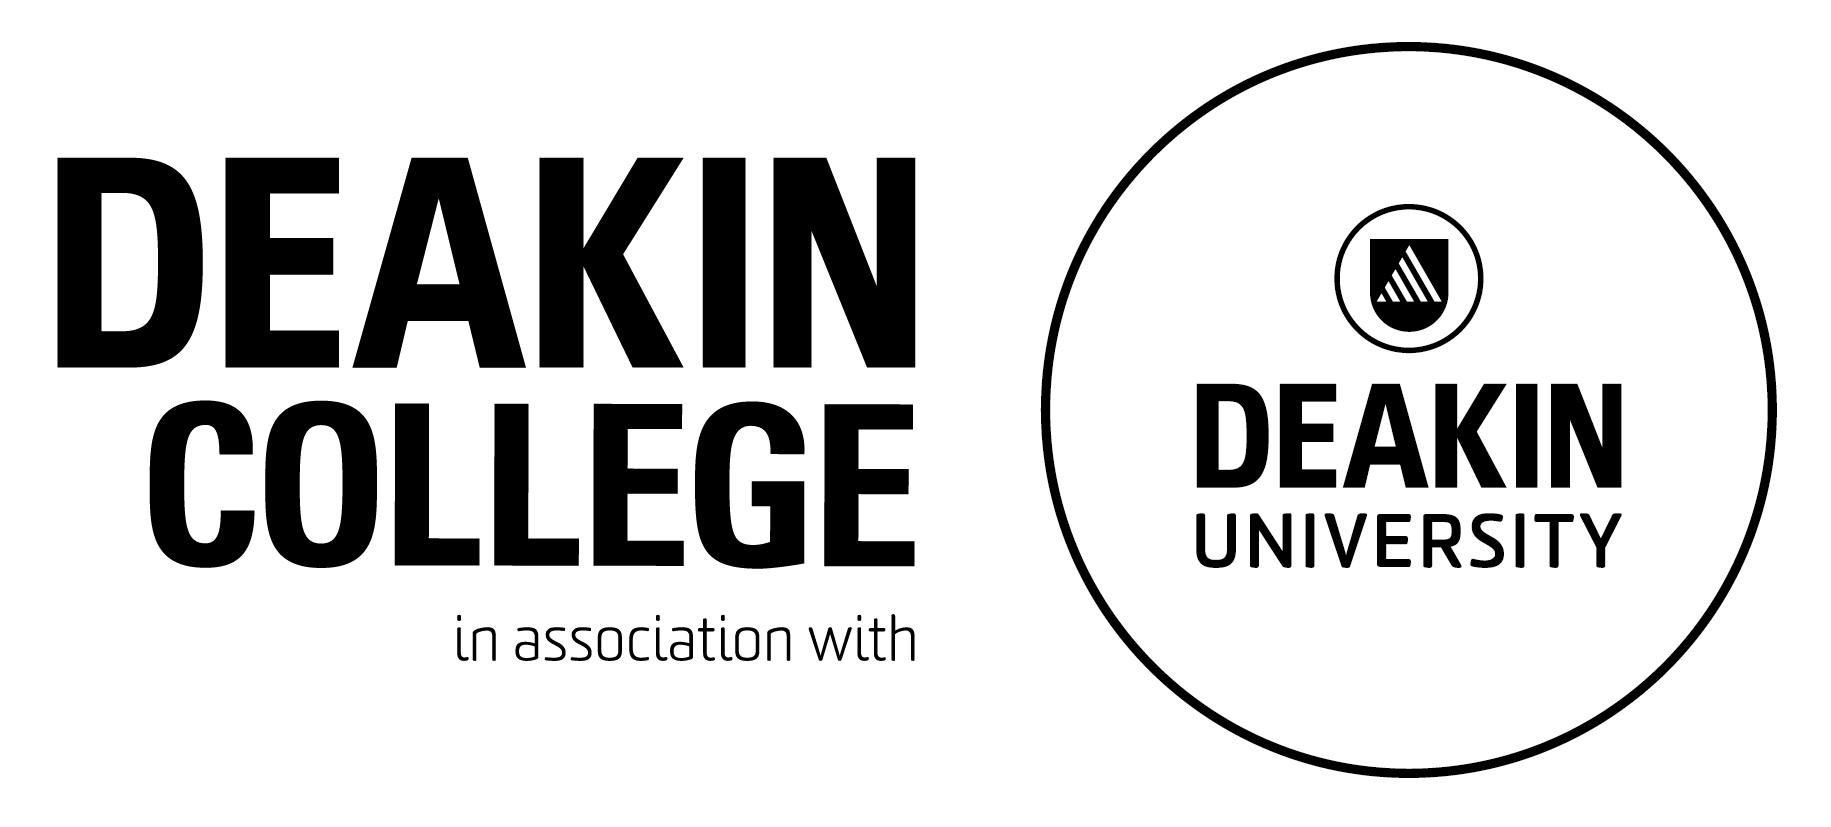 Deakin College Deakin University